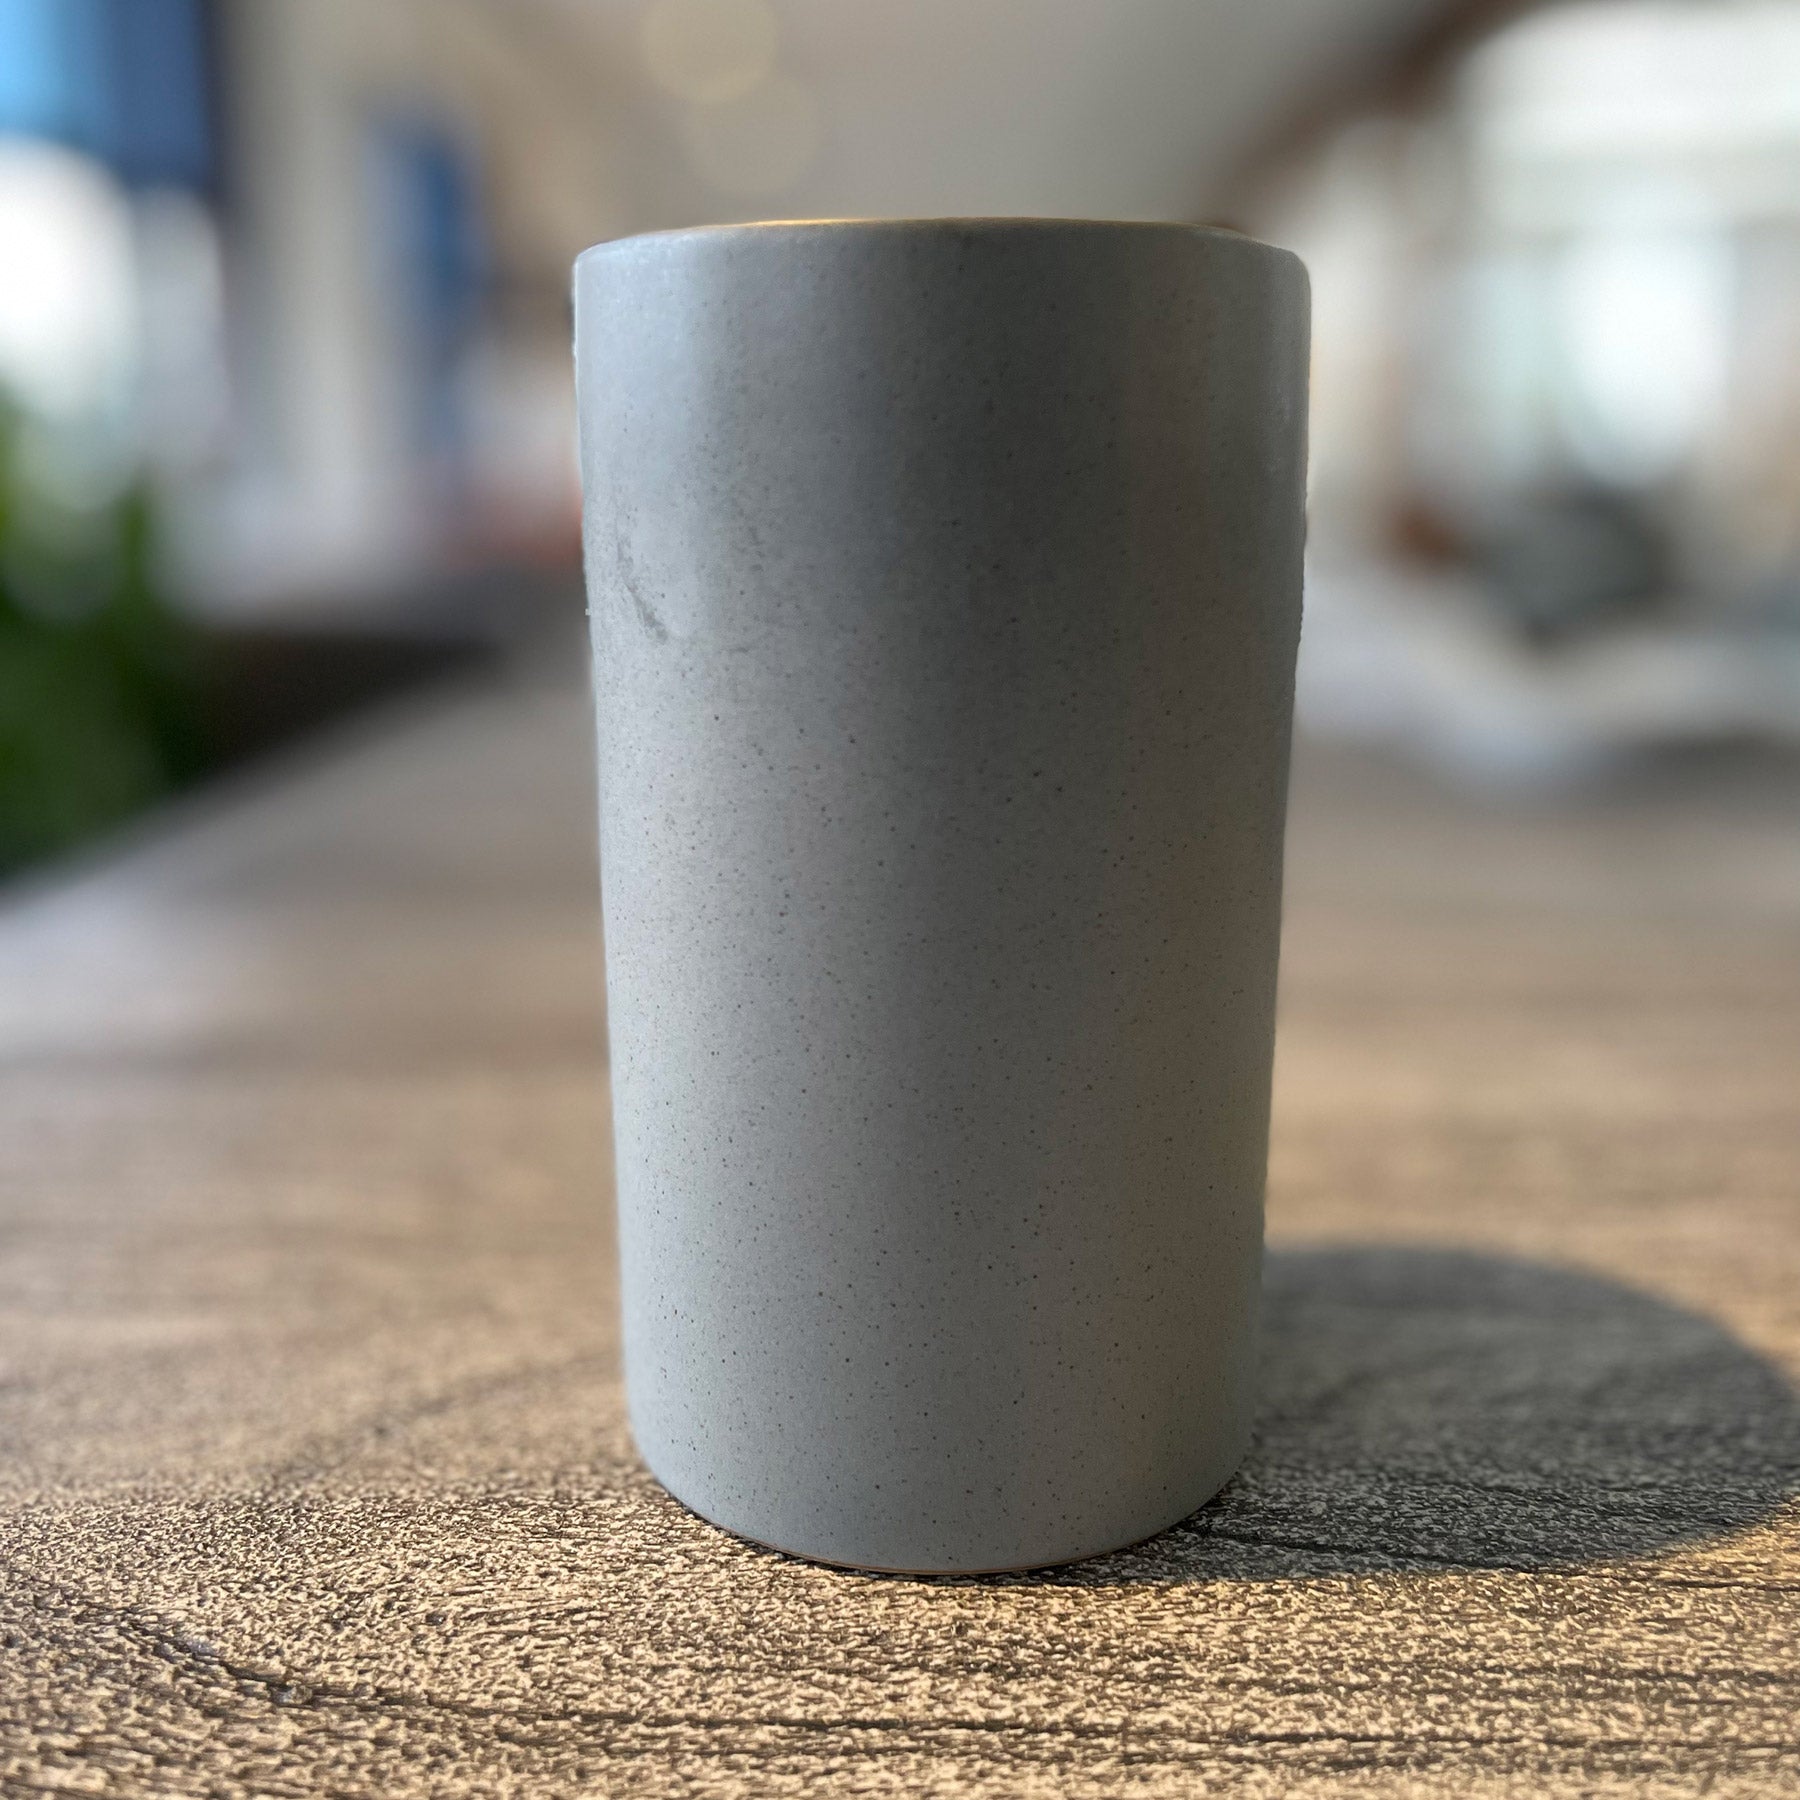 Ceramic Tumbler Cup